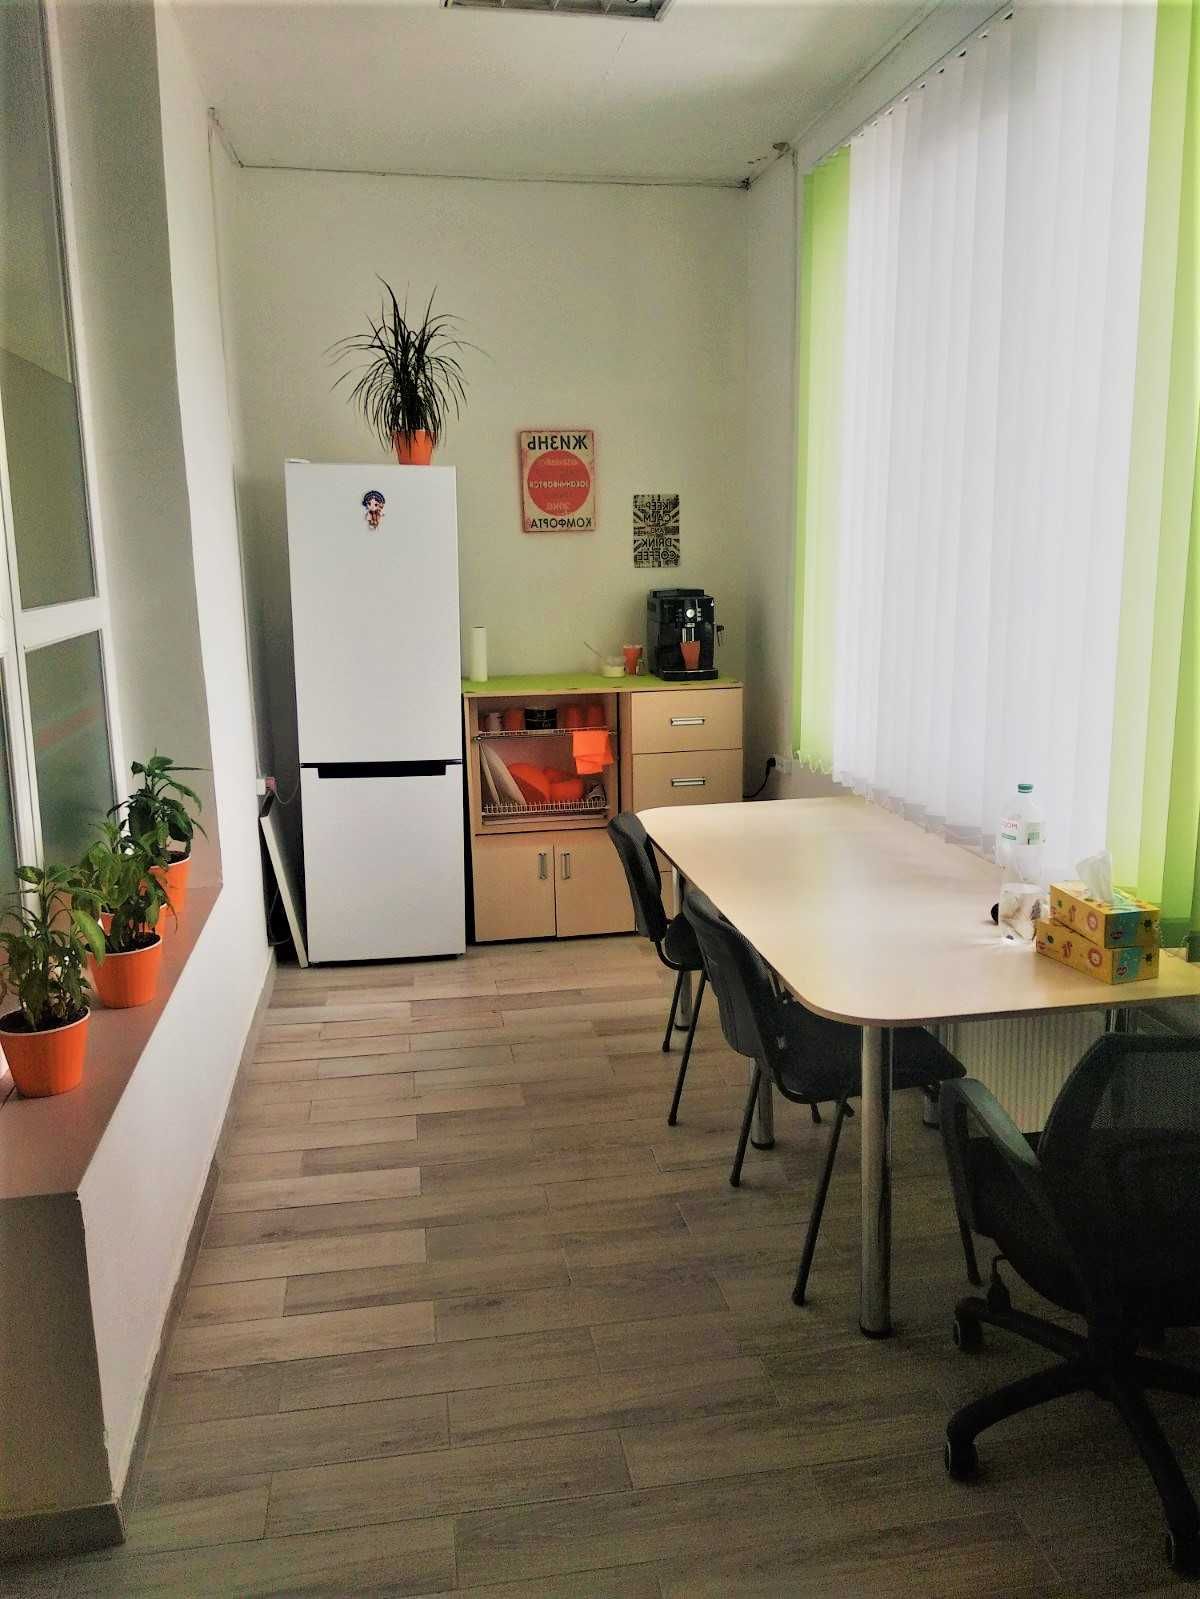 140  кв.м панорамный офис  IT open space+ кабинеты. кухня